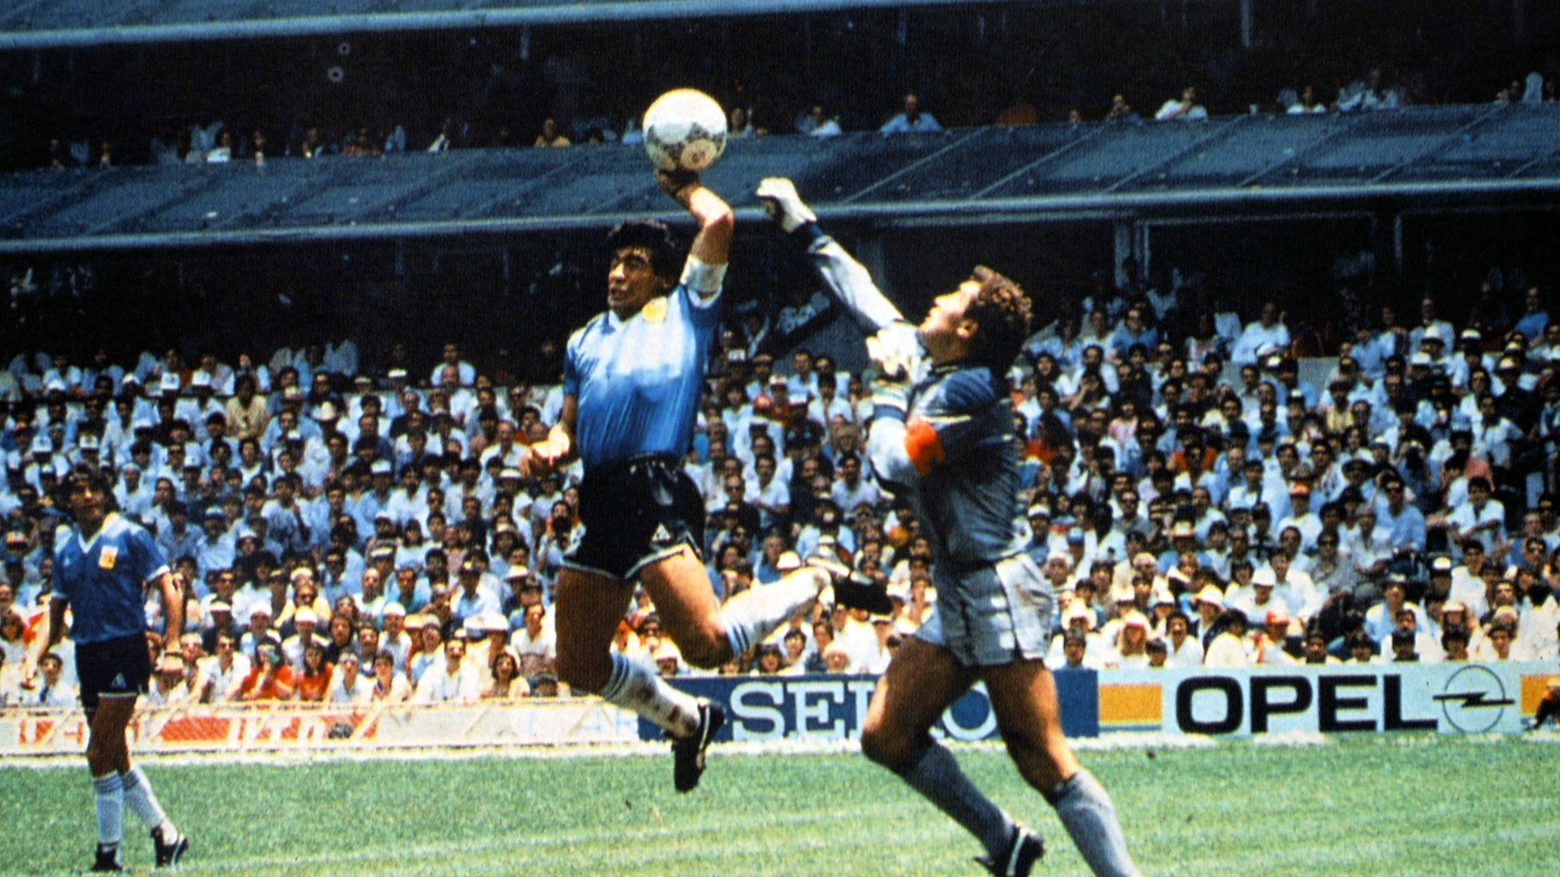 Il gol di mano segnato da Maradona al Mondiale di Messico 1986 (Alive)